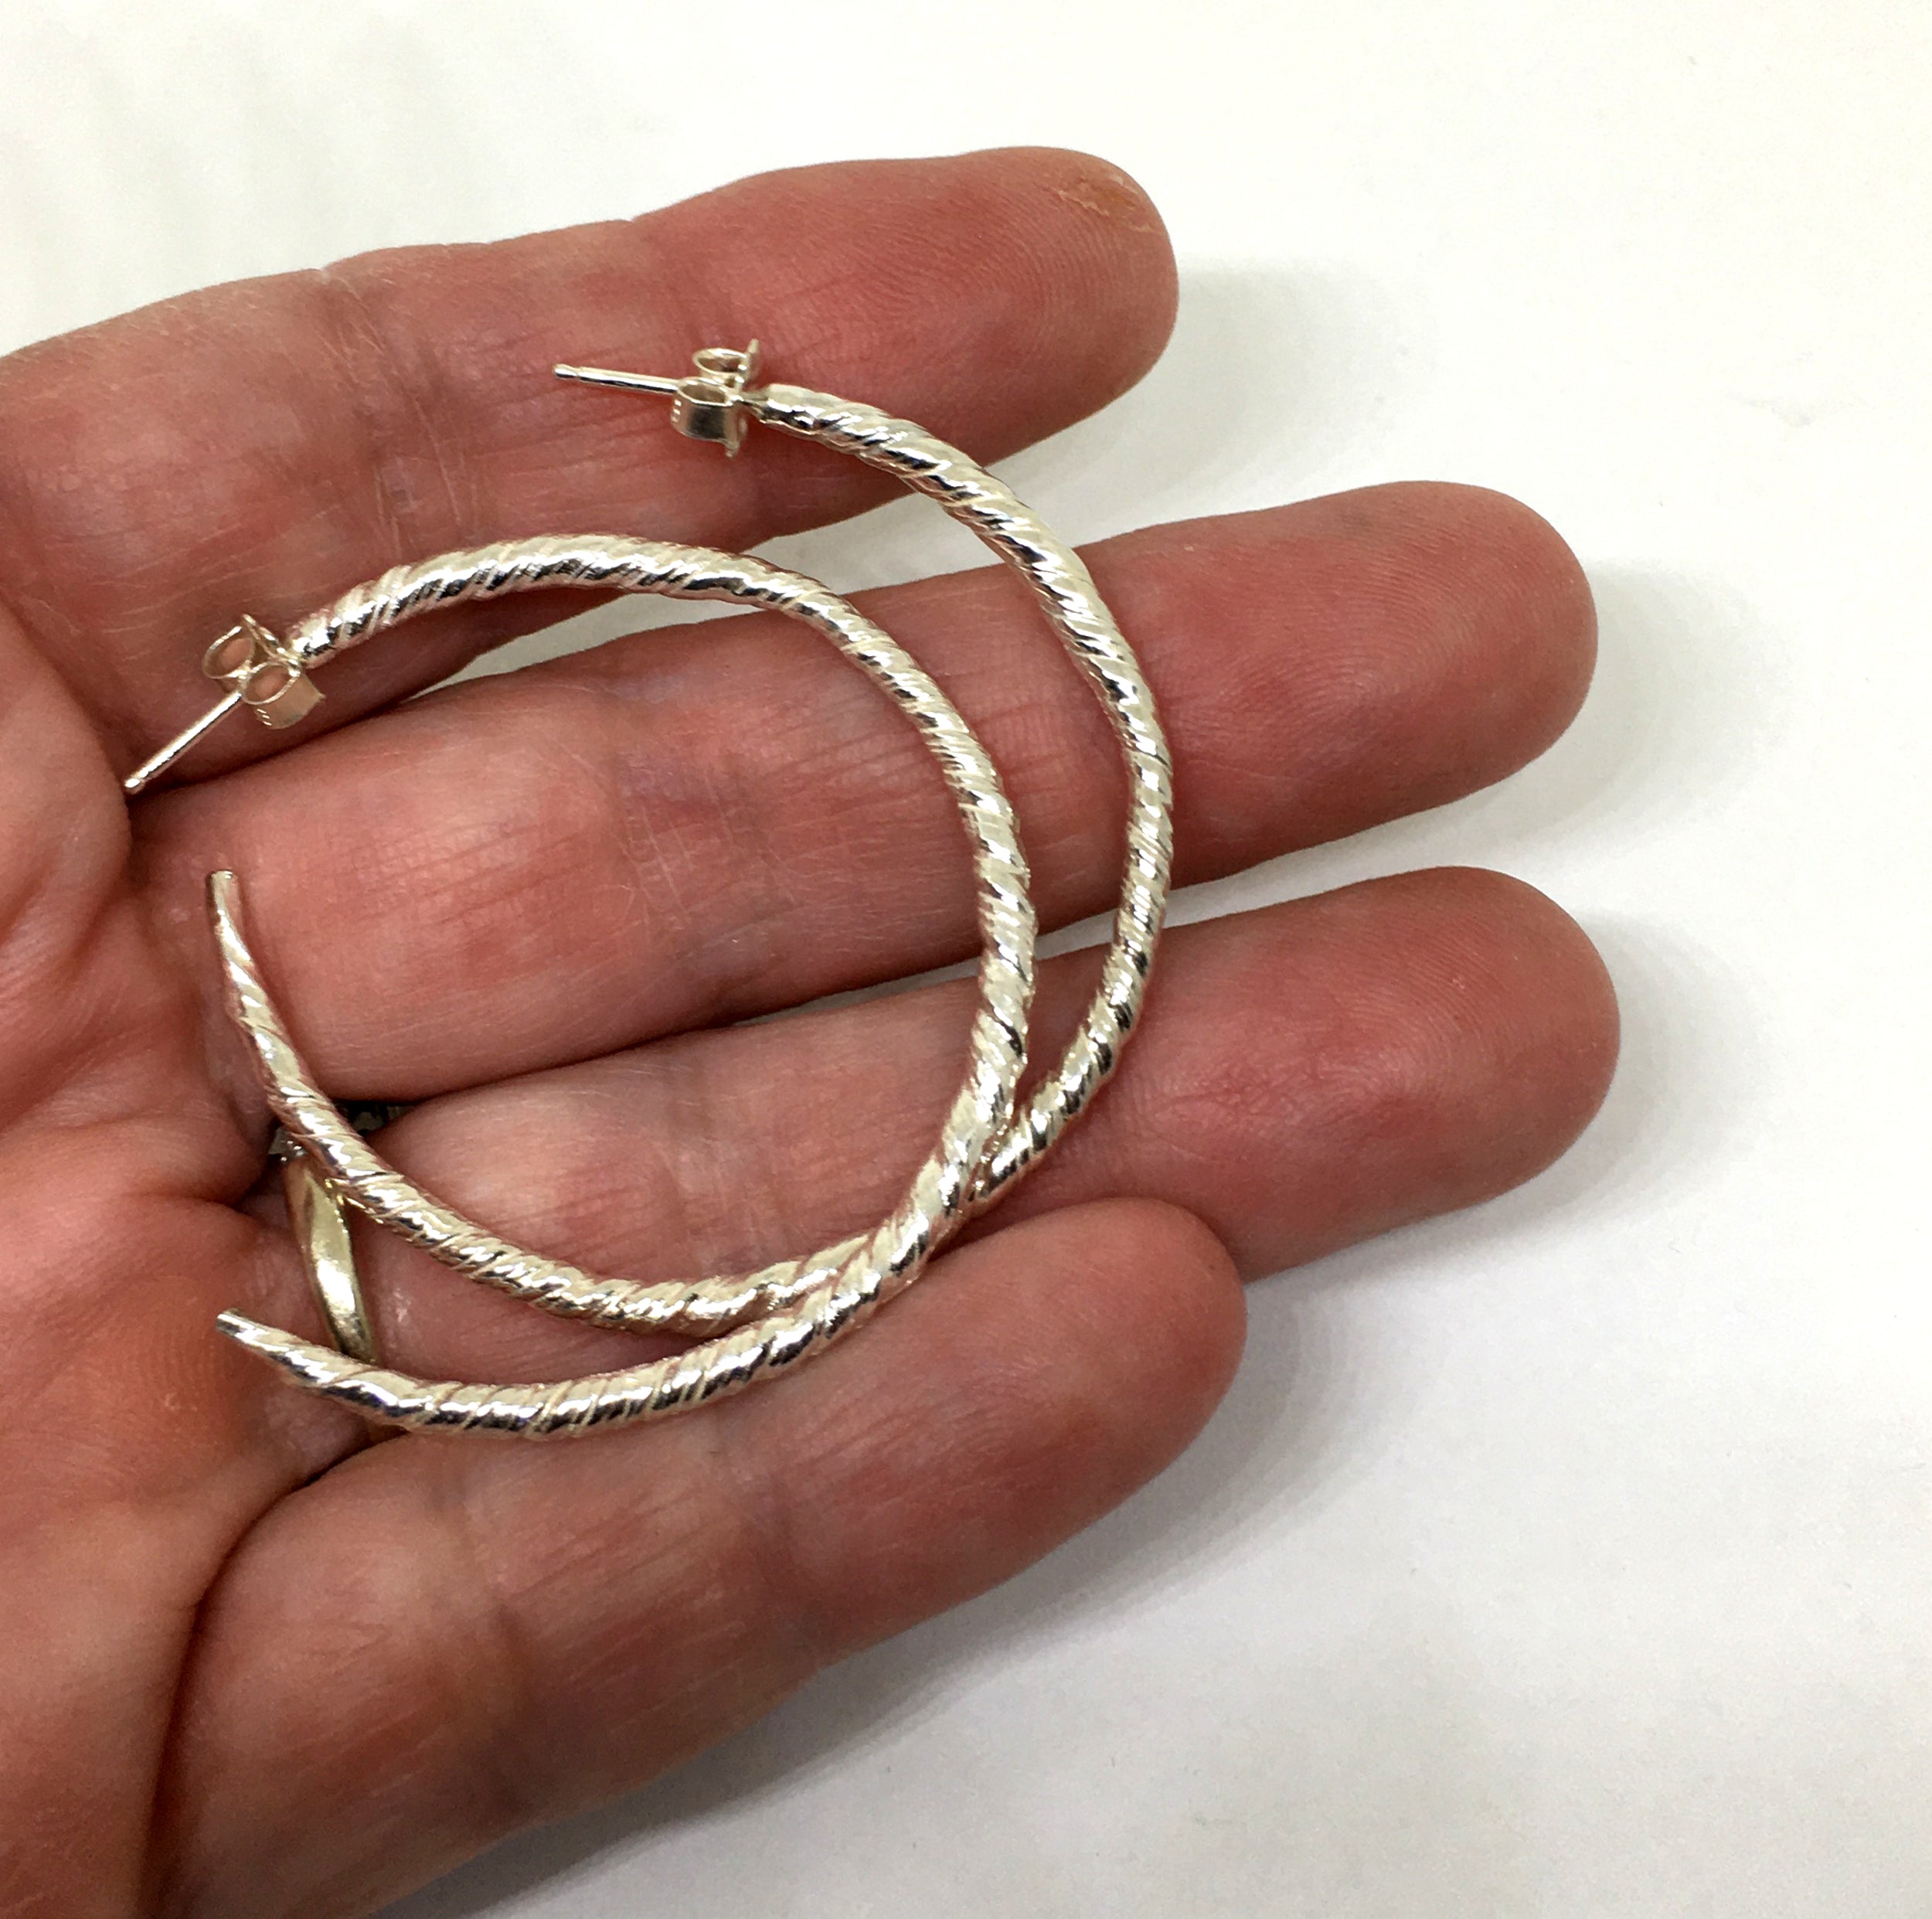 Sterling Silver Twist Semi Hoop Earrings - Large Size